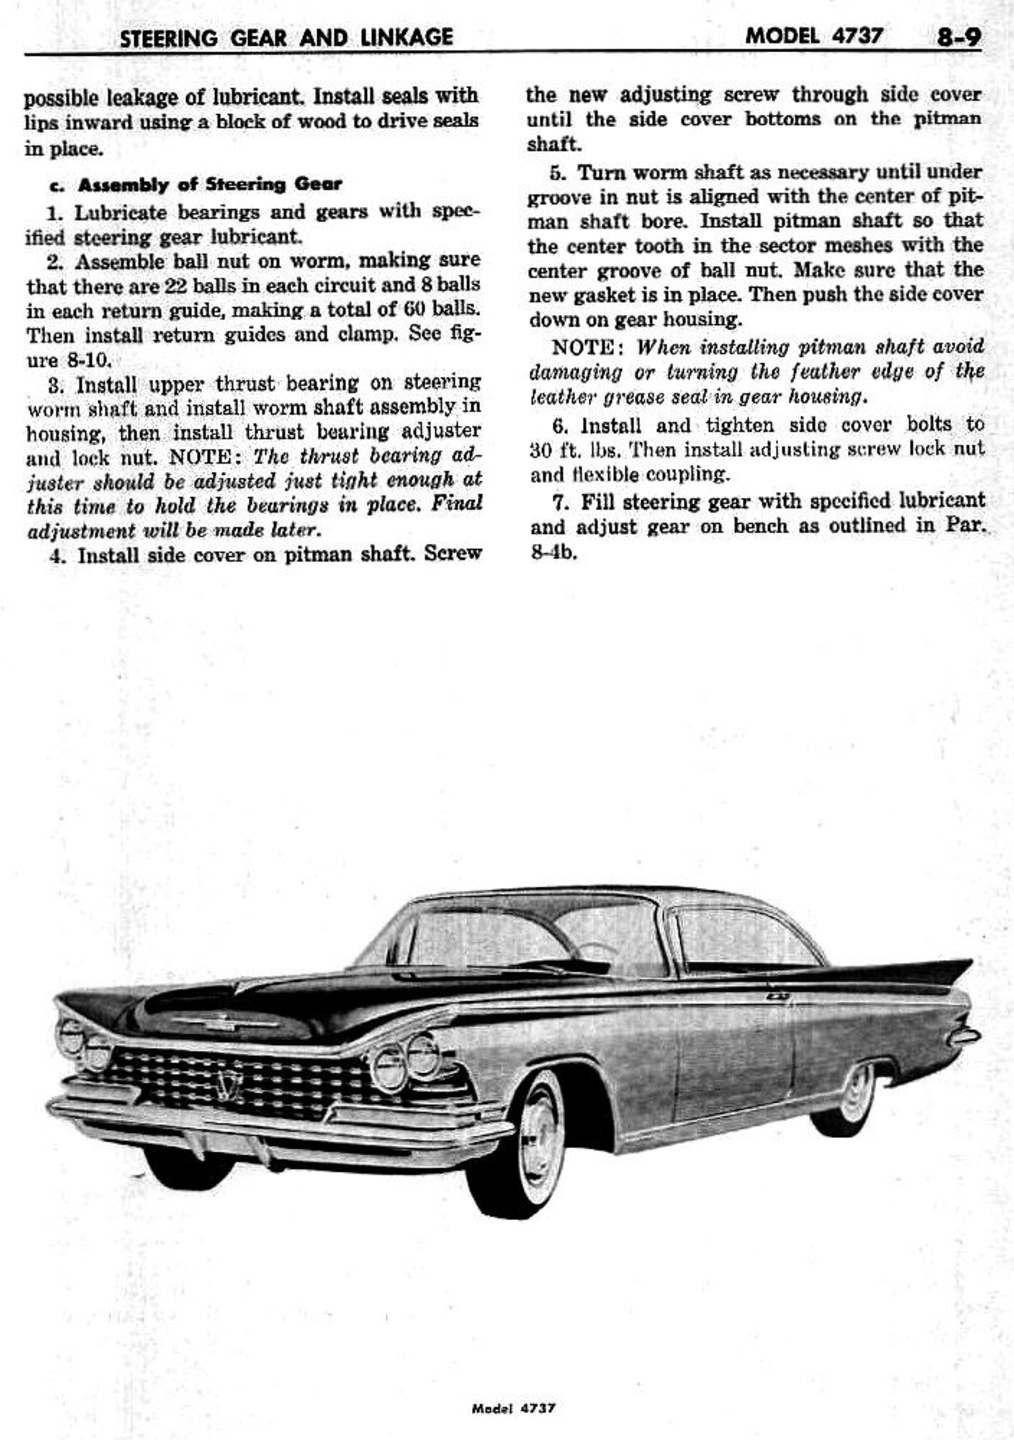 n_09 1959 Buick Shop Manual - Steering-009-009.jpg